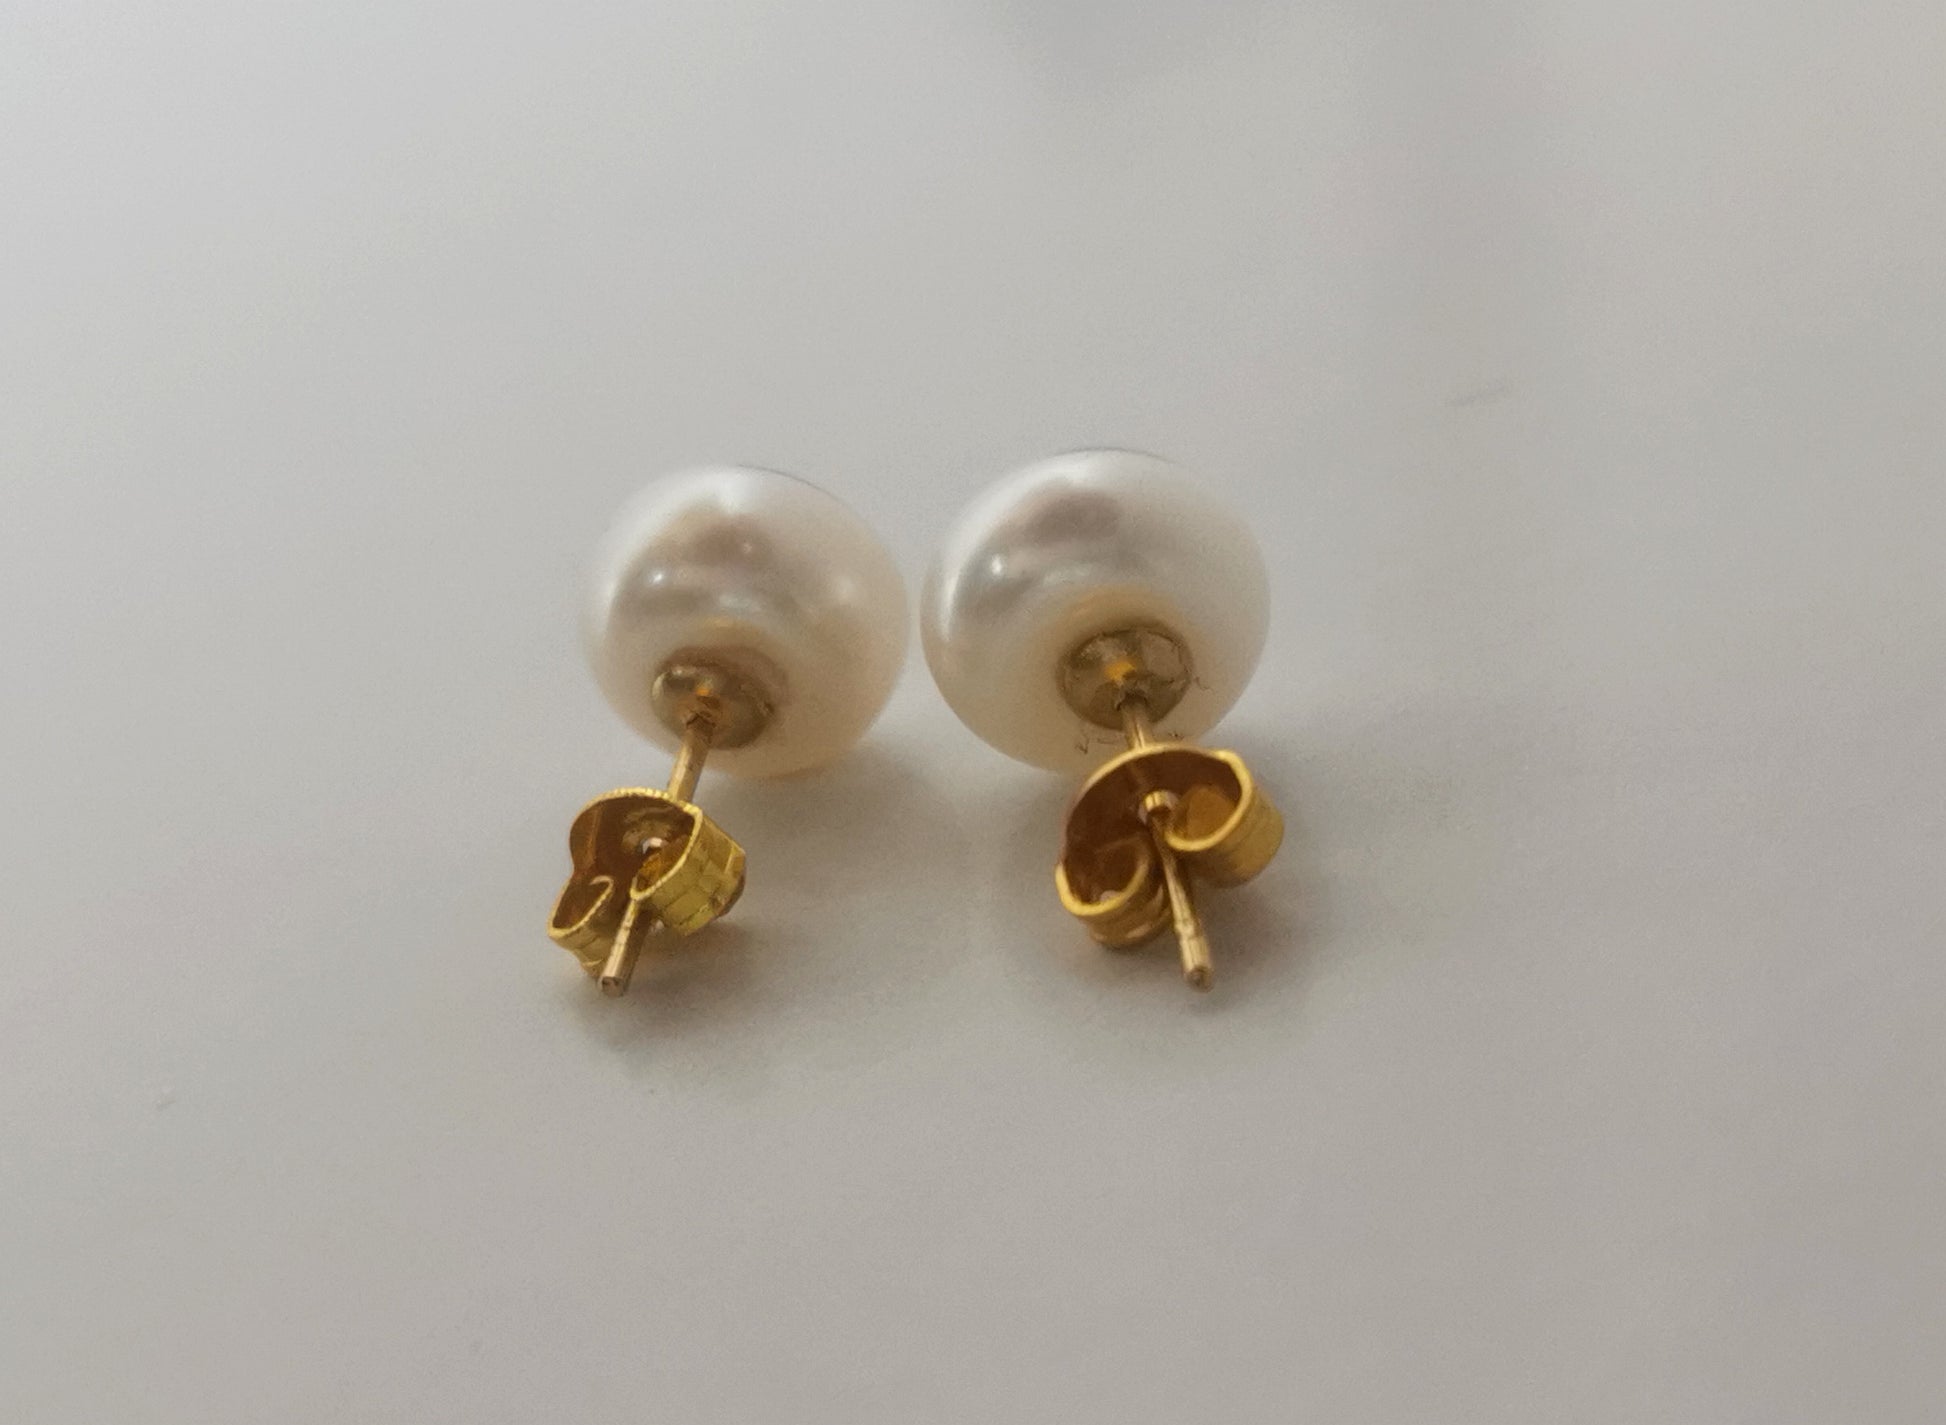 Boucles d'oreilles perles de culture blanches 9mm montées sur clous plaqués or. Présentées cote à cote, perles en haut, posées sur un fond blanc. Vue en très gros plan de face.